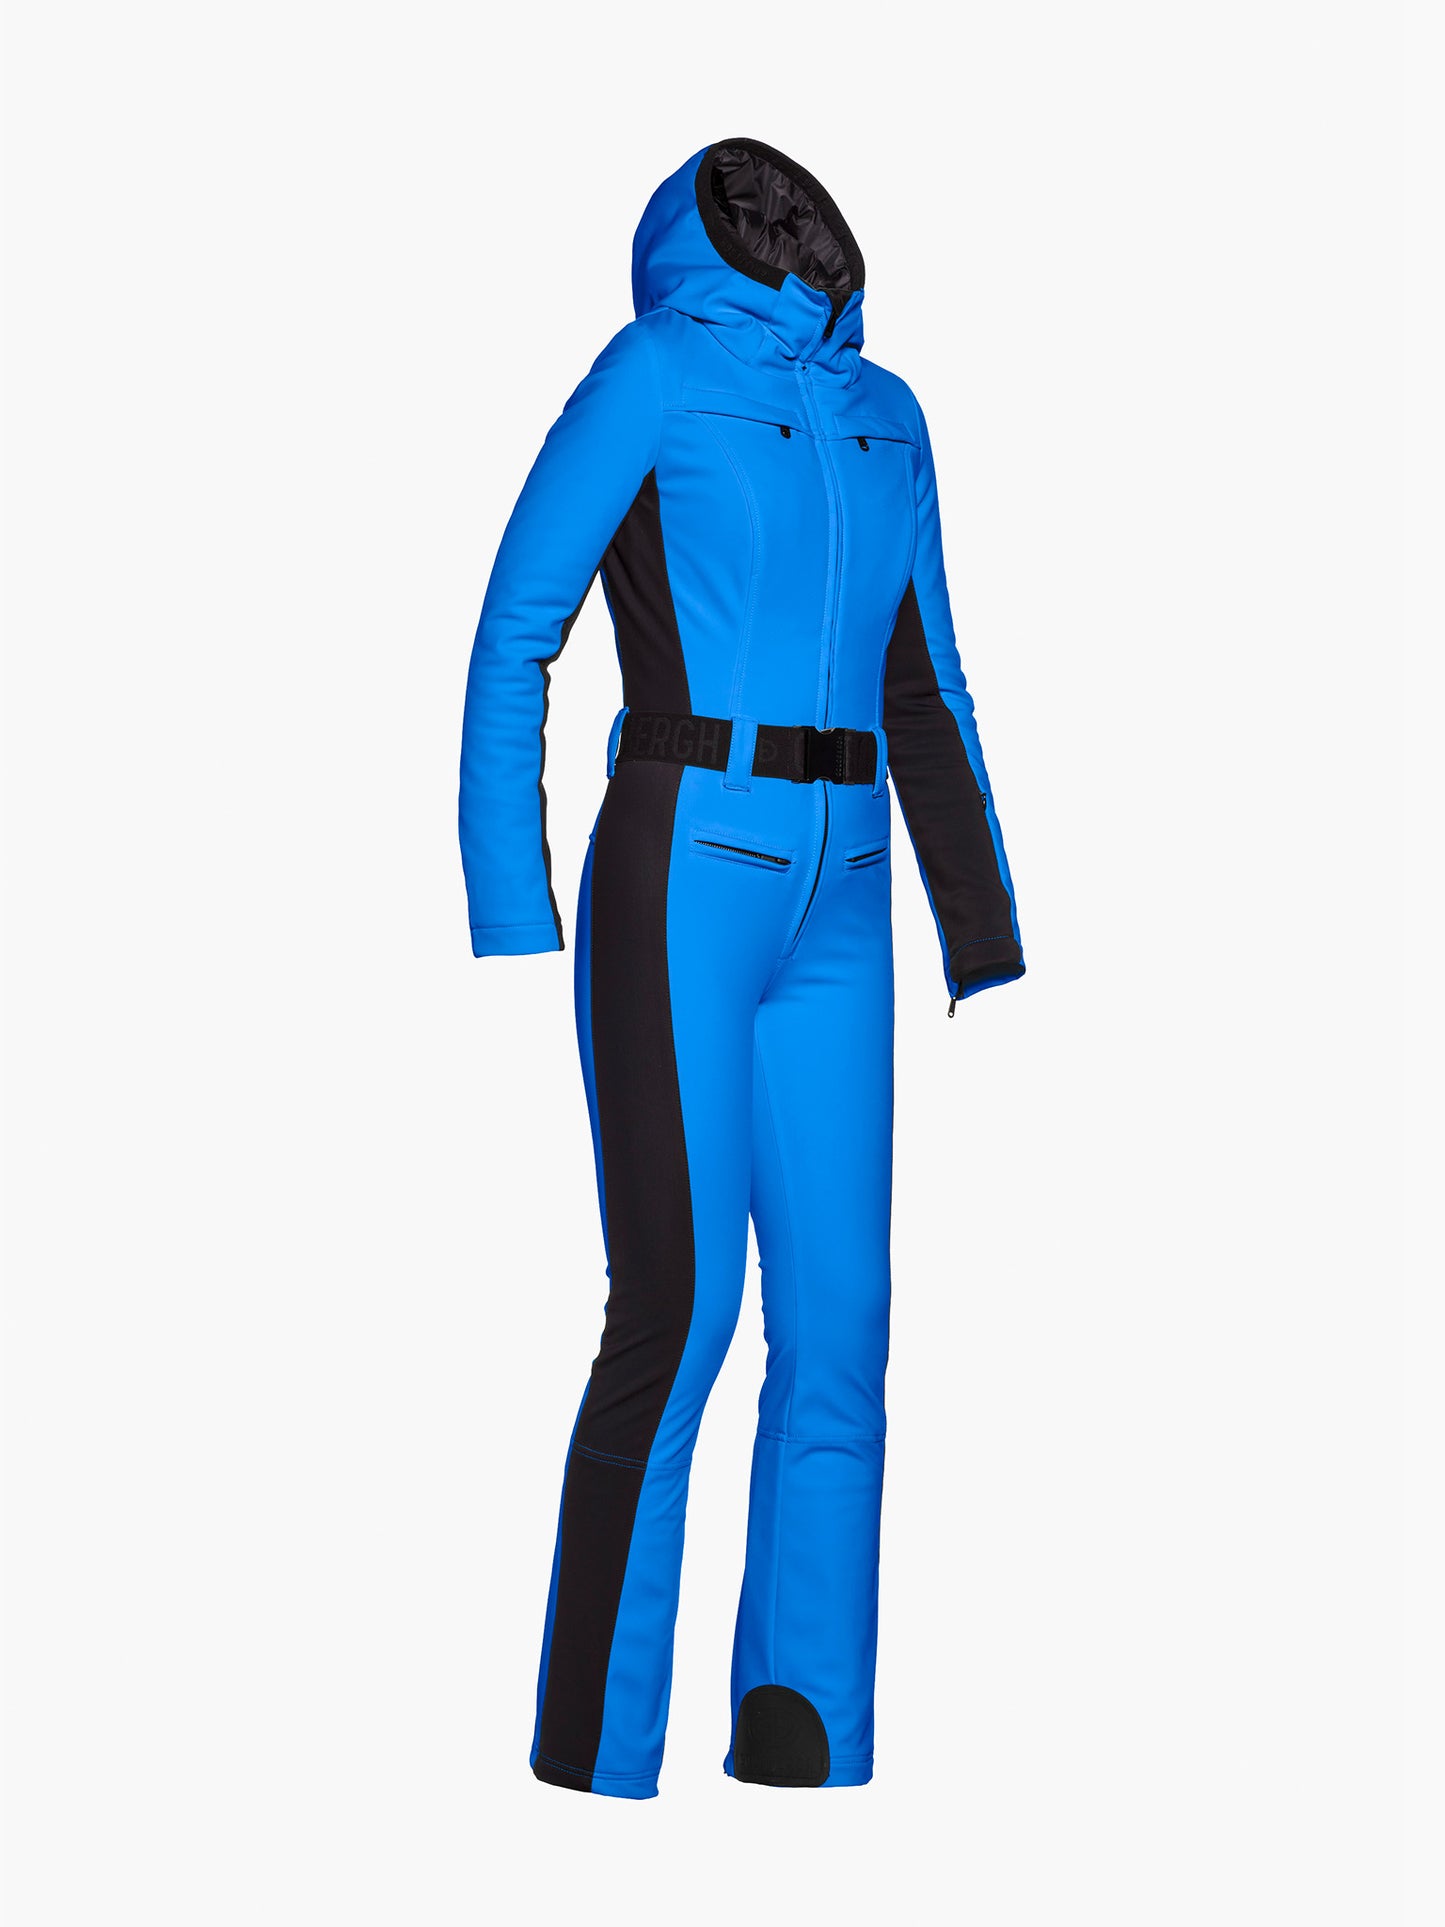 PARRY ski suit